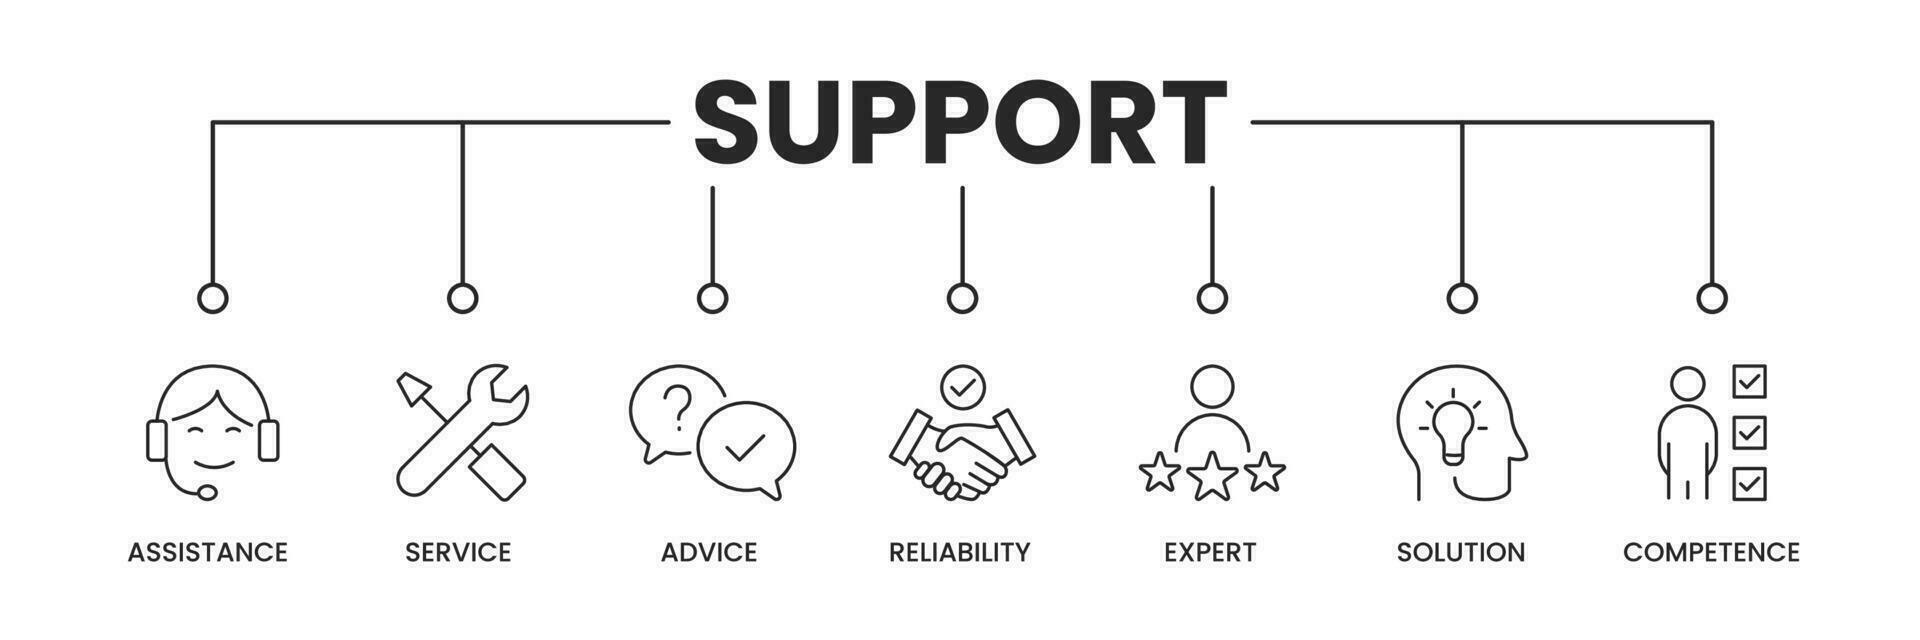 supporto icone banner.support bandiera con icone di assistenza, servizio, consiglio, affidabilità, esperto, soluzione, e competenza. vettore illustrazione.